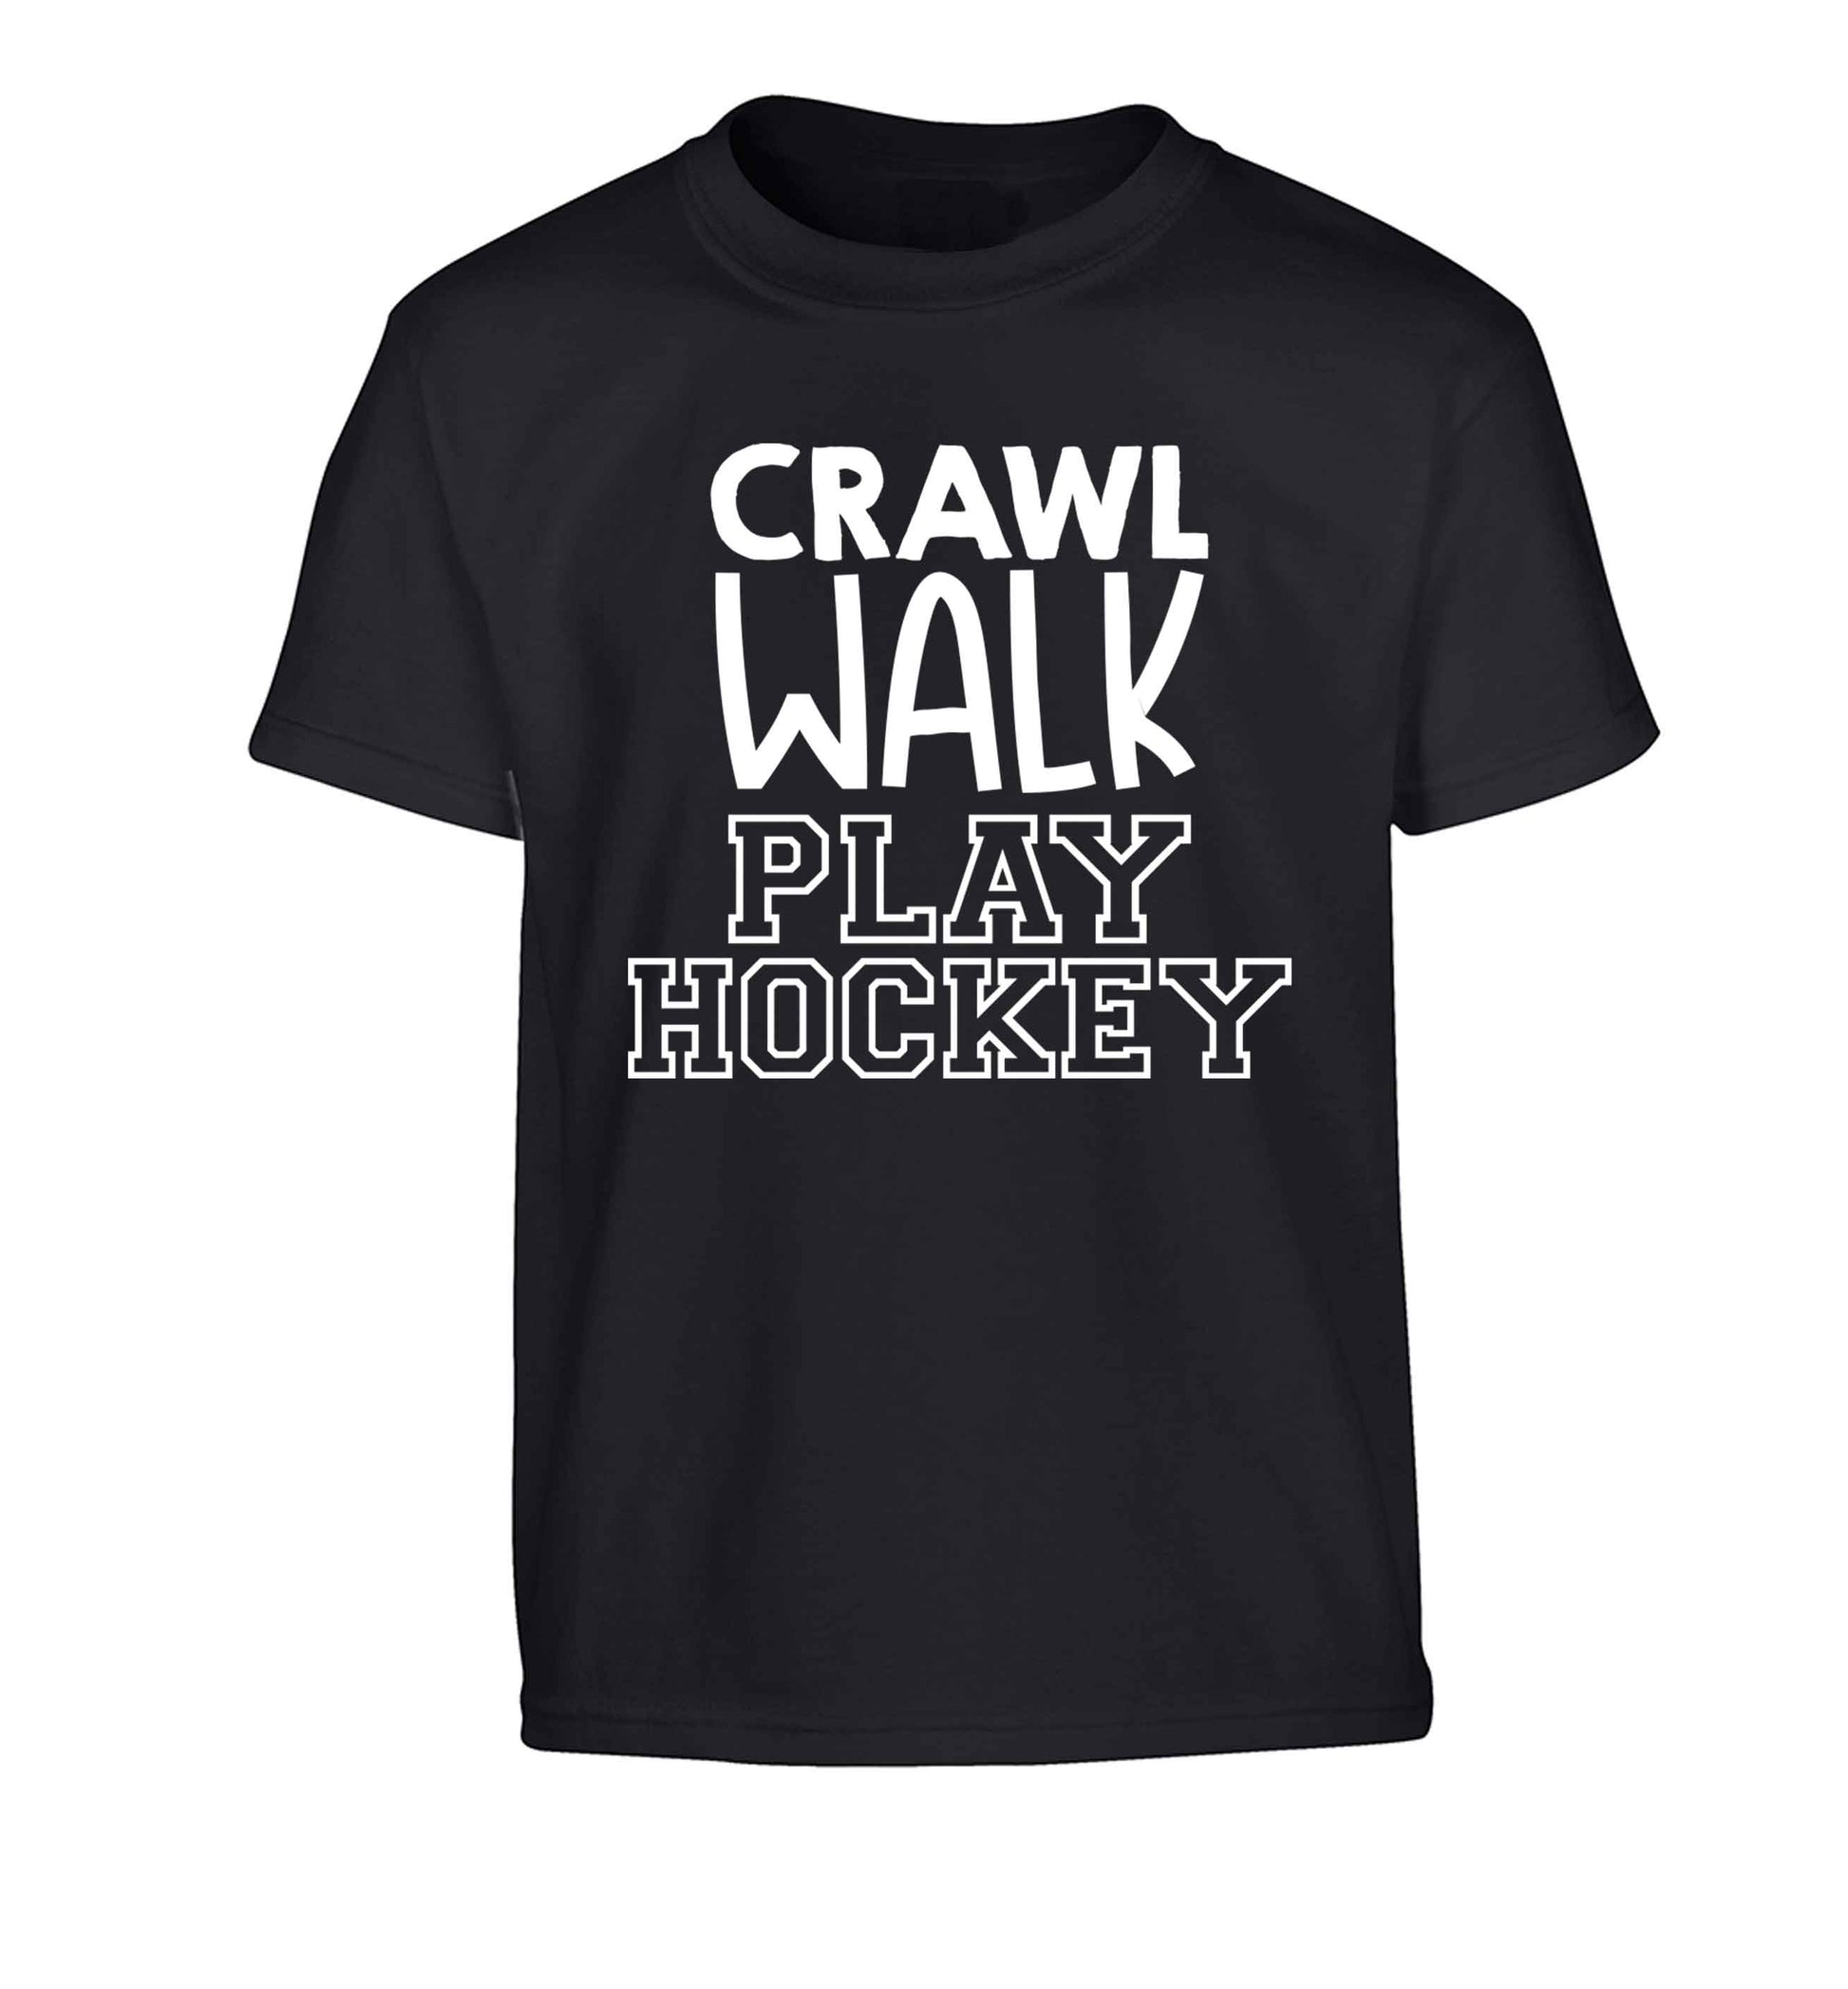 Crawl walk play hockey Children's black Tshirt 12-13 Years